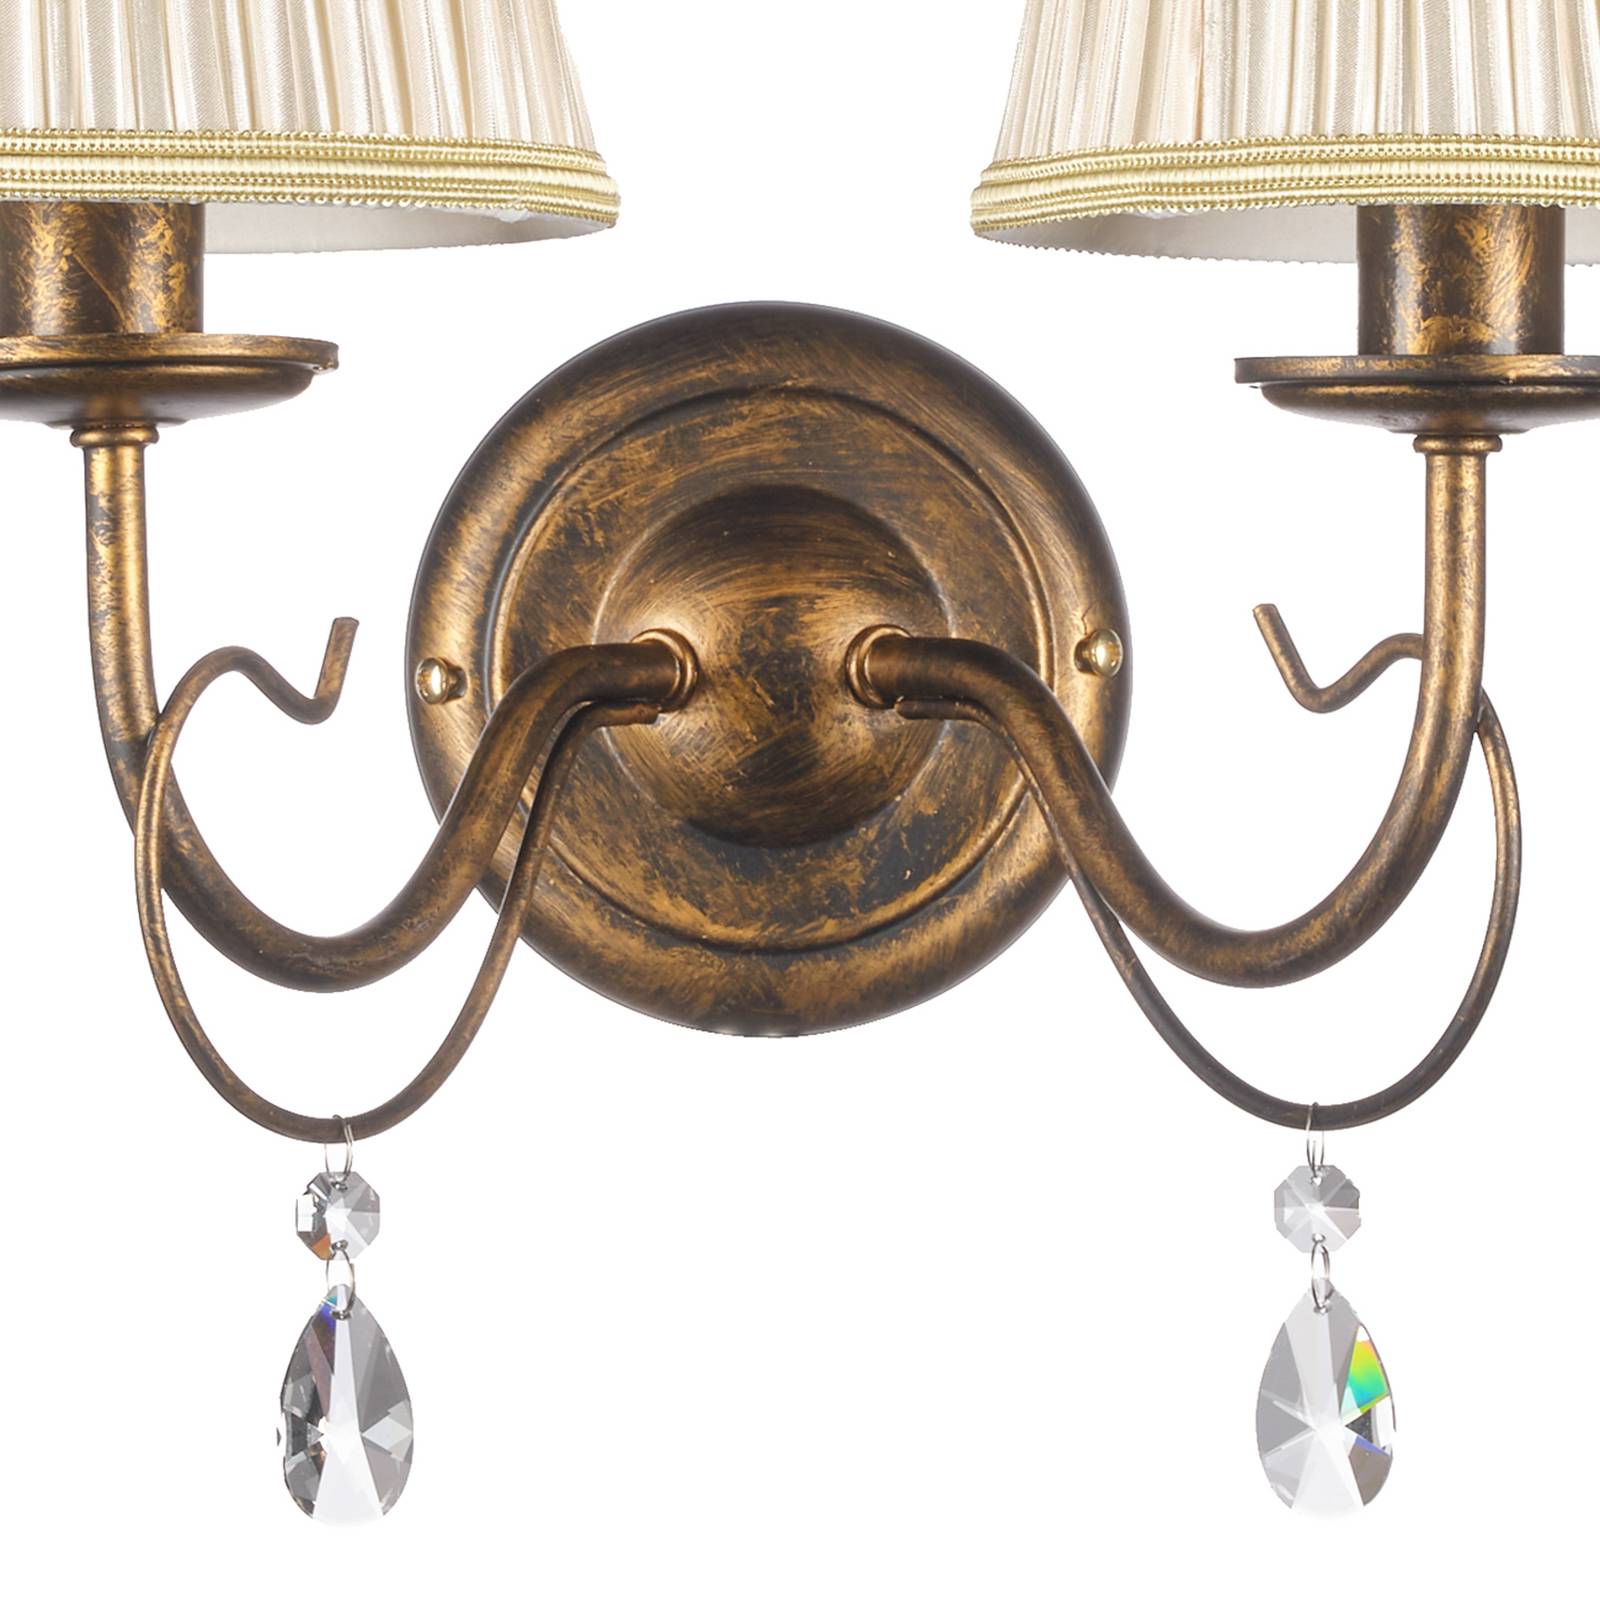 Onli delia fali lámpa, bronz színű, 2-lámpás, szélesség 25 cm